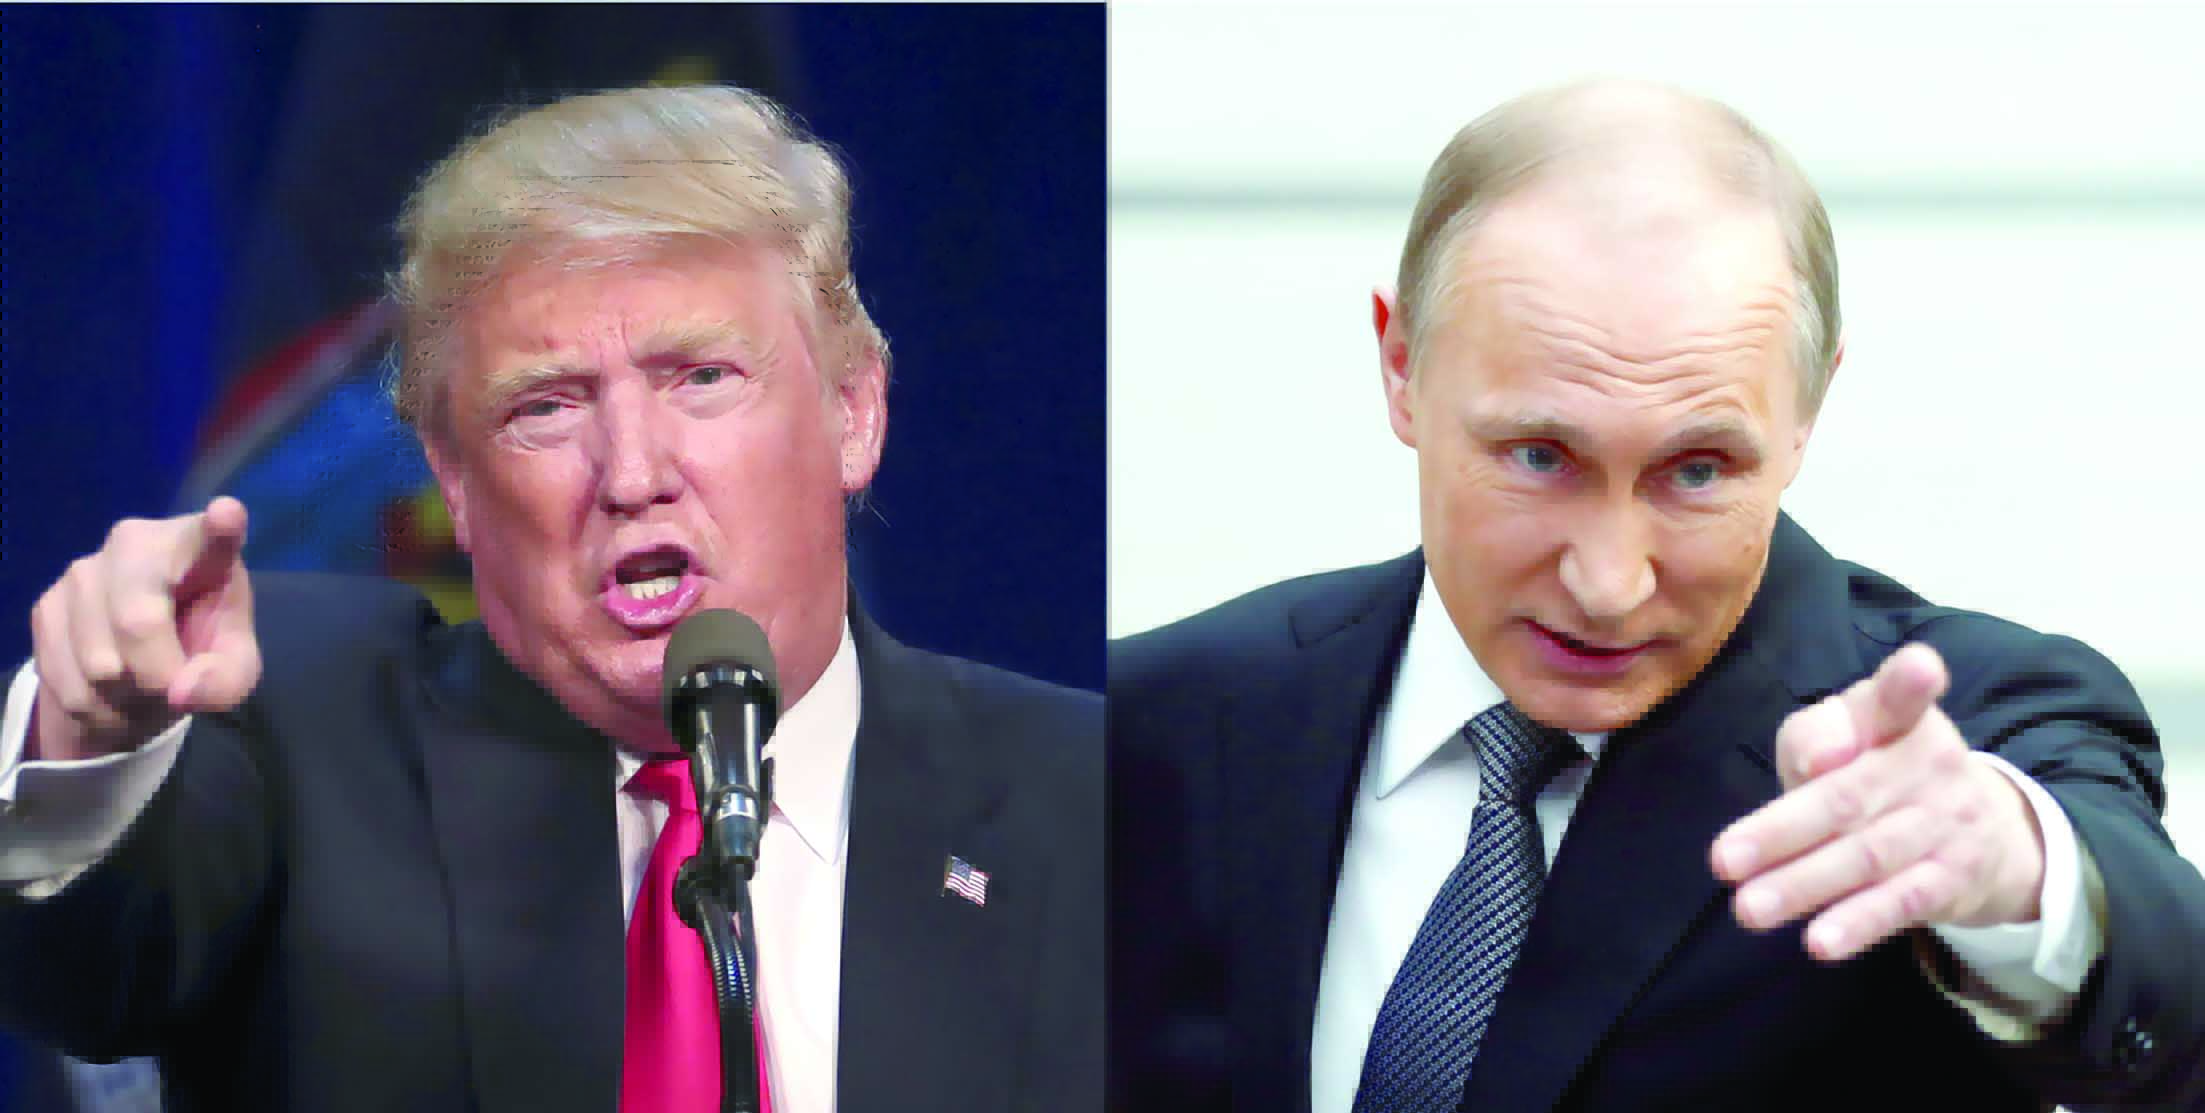 «الشعيرات» و«أم القنابل» رسالتان لمنتقدي علاقته بموسكو

هل يسعى ترامب لصدام «تكتيكي» مع بوتين؟